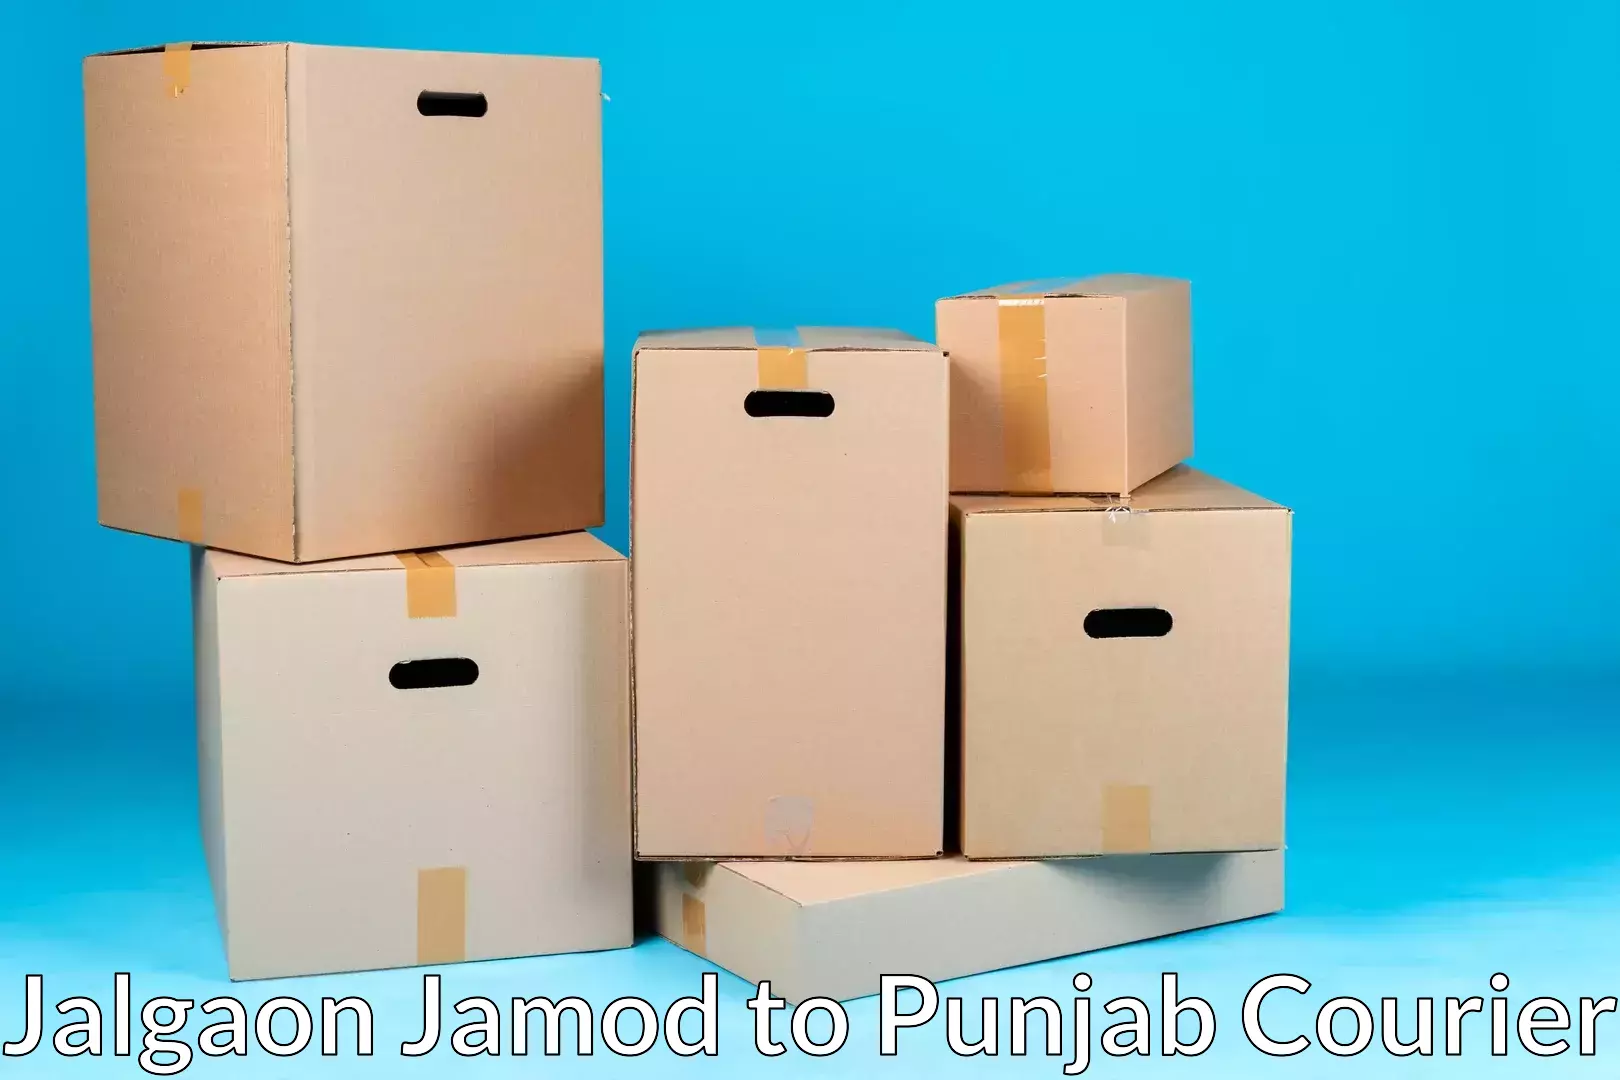 Specialized moving company Jalgaon Jamod to Batala